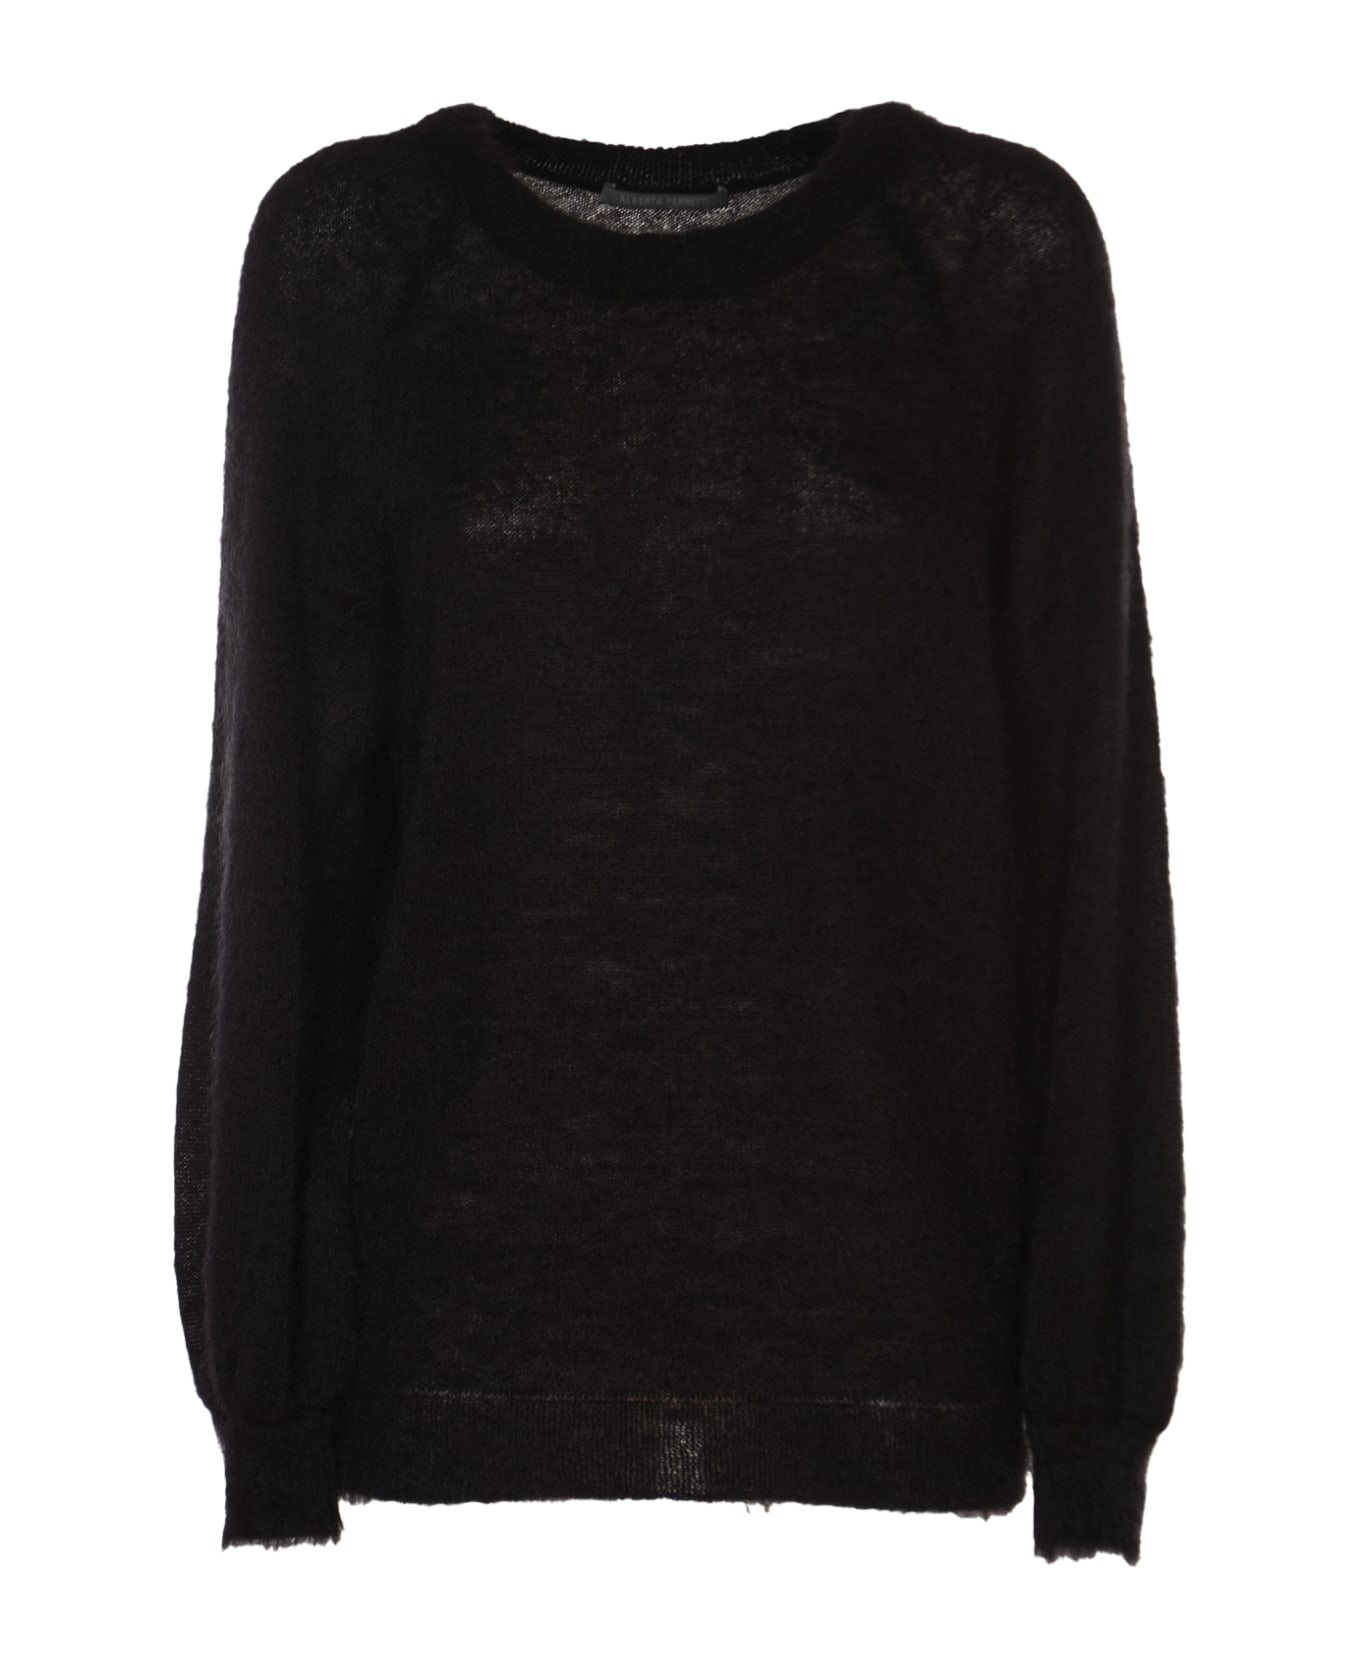 Alberta Ferretti Round Neck Sweater - Black